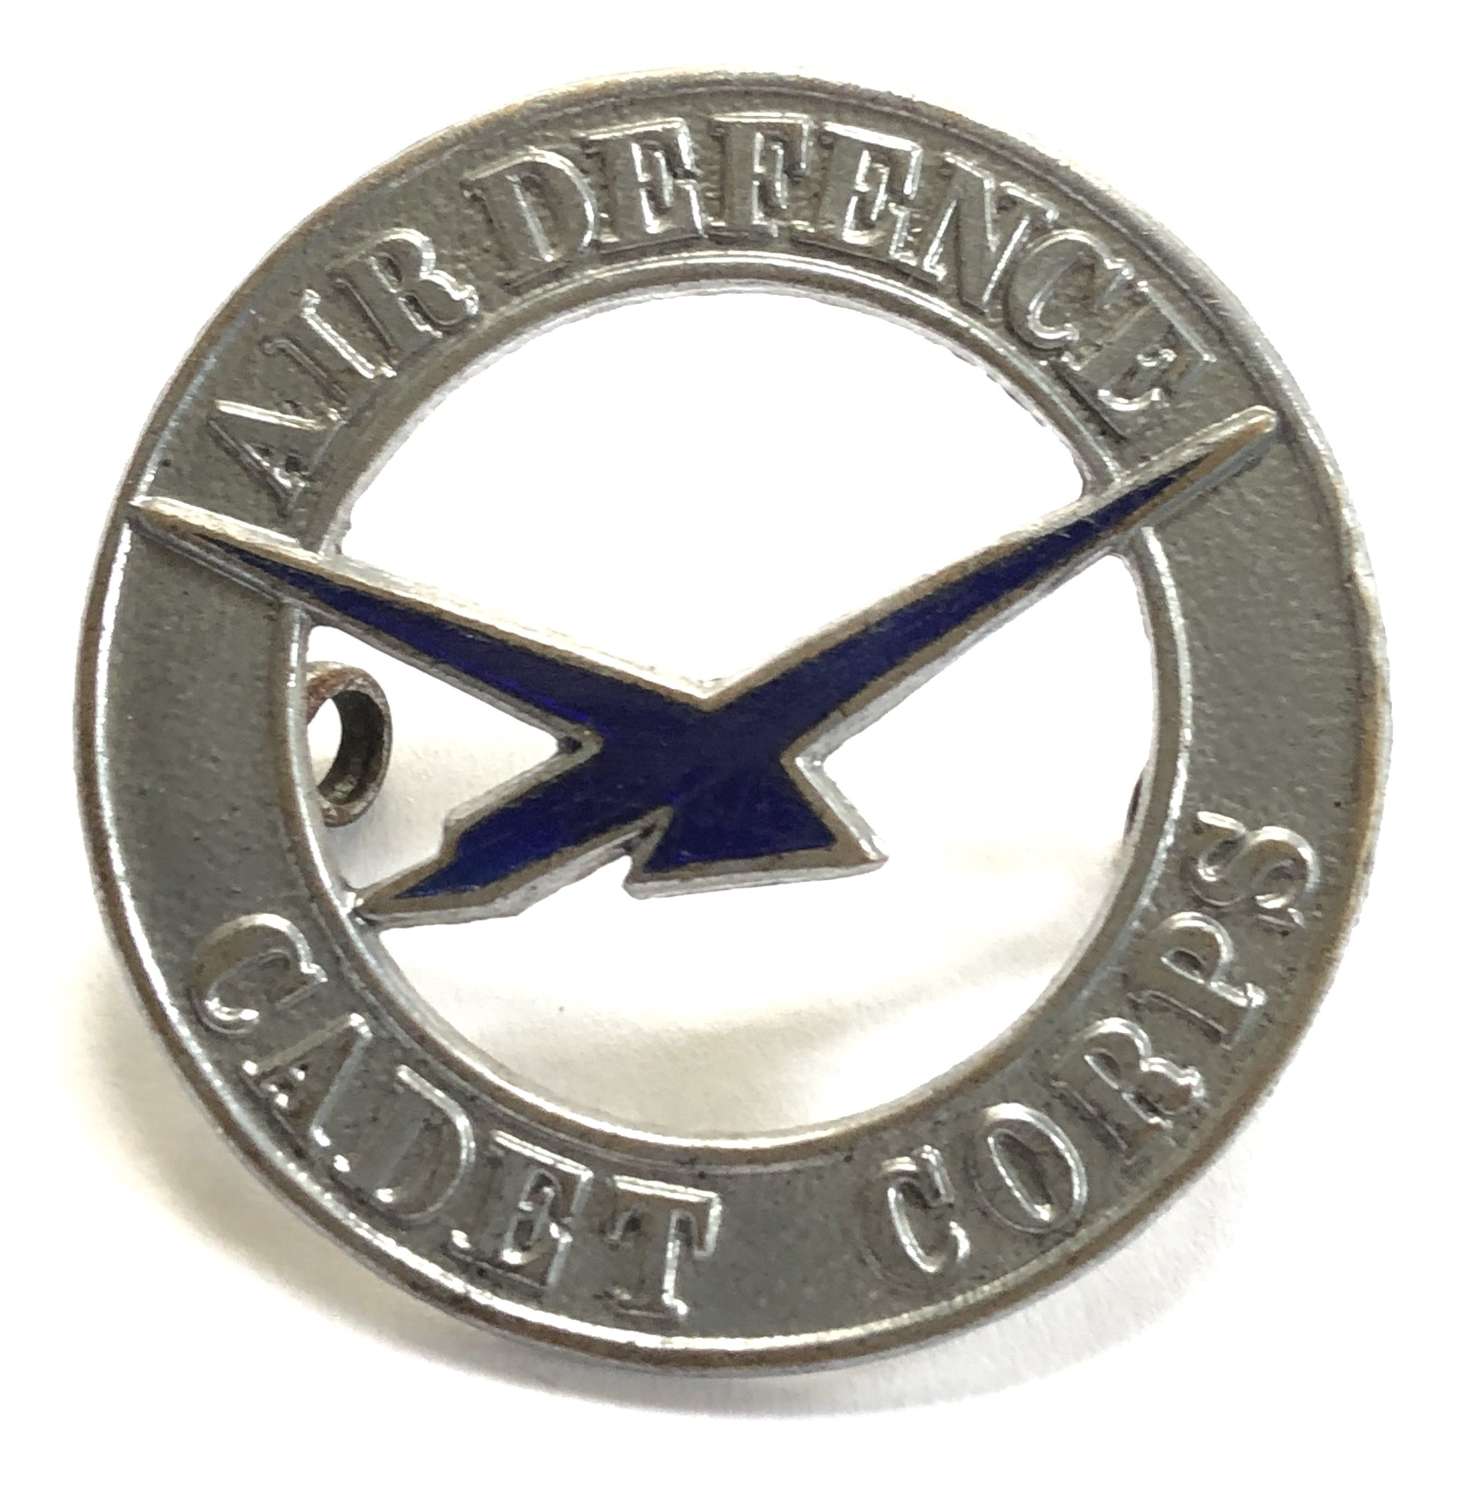 Air Defence Cadet Corps cap badge circa 1938-41